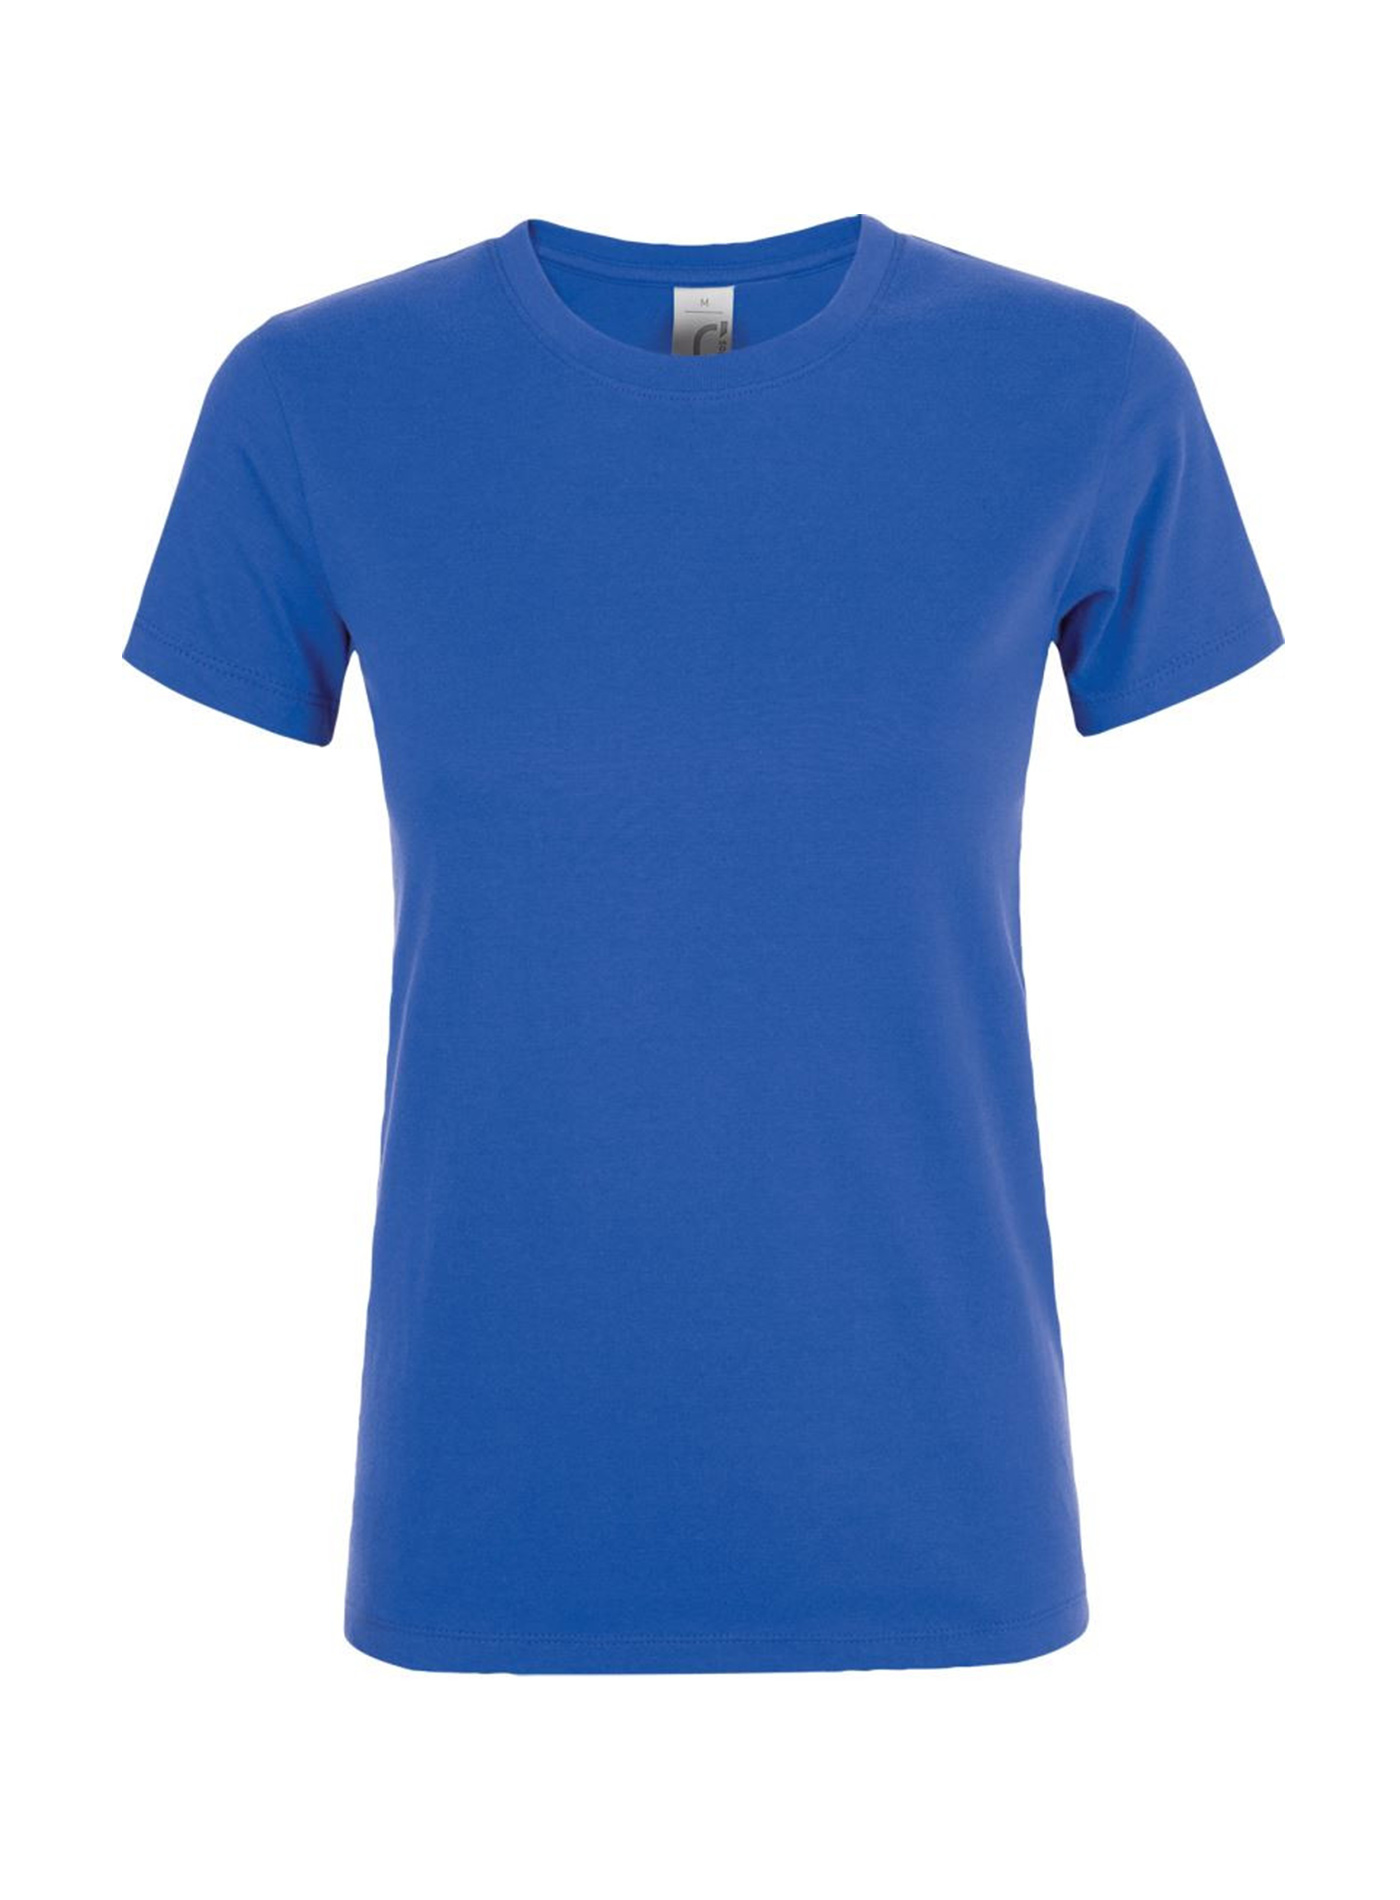 Dámské tričko SOL'S Regent - královská modrá L